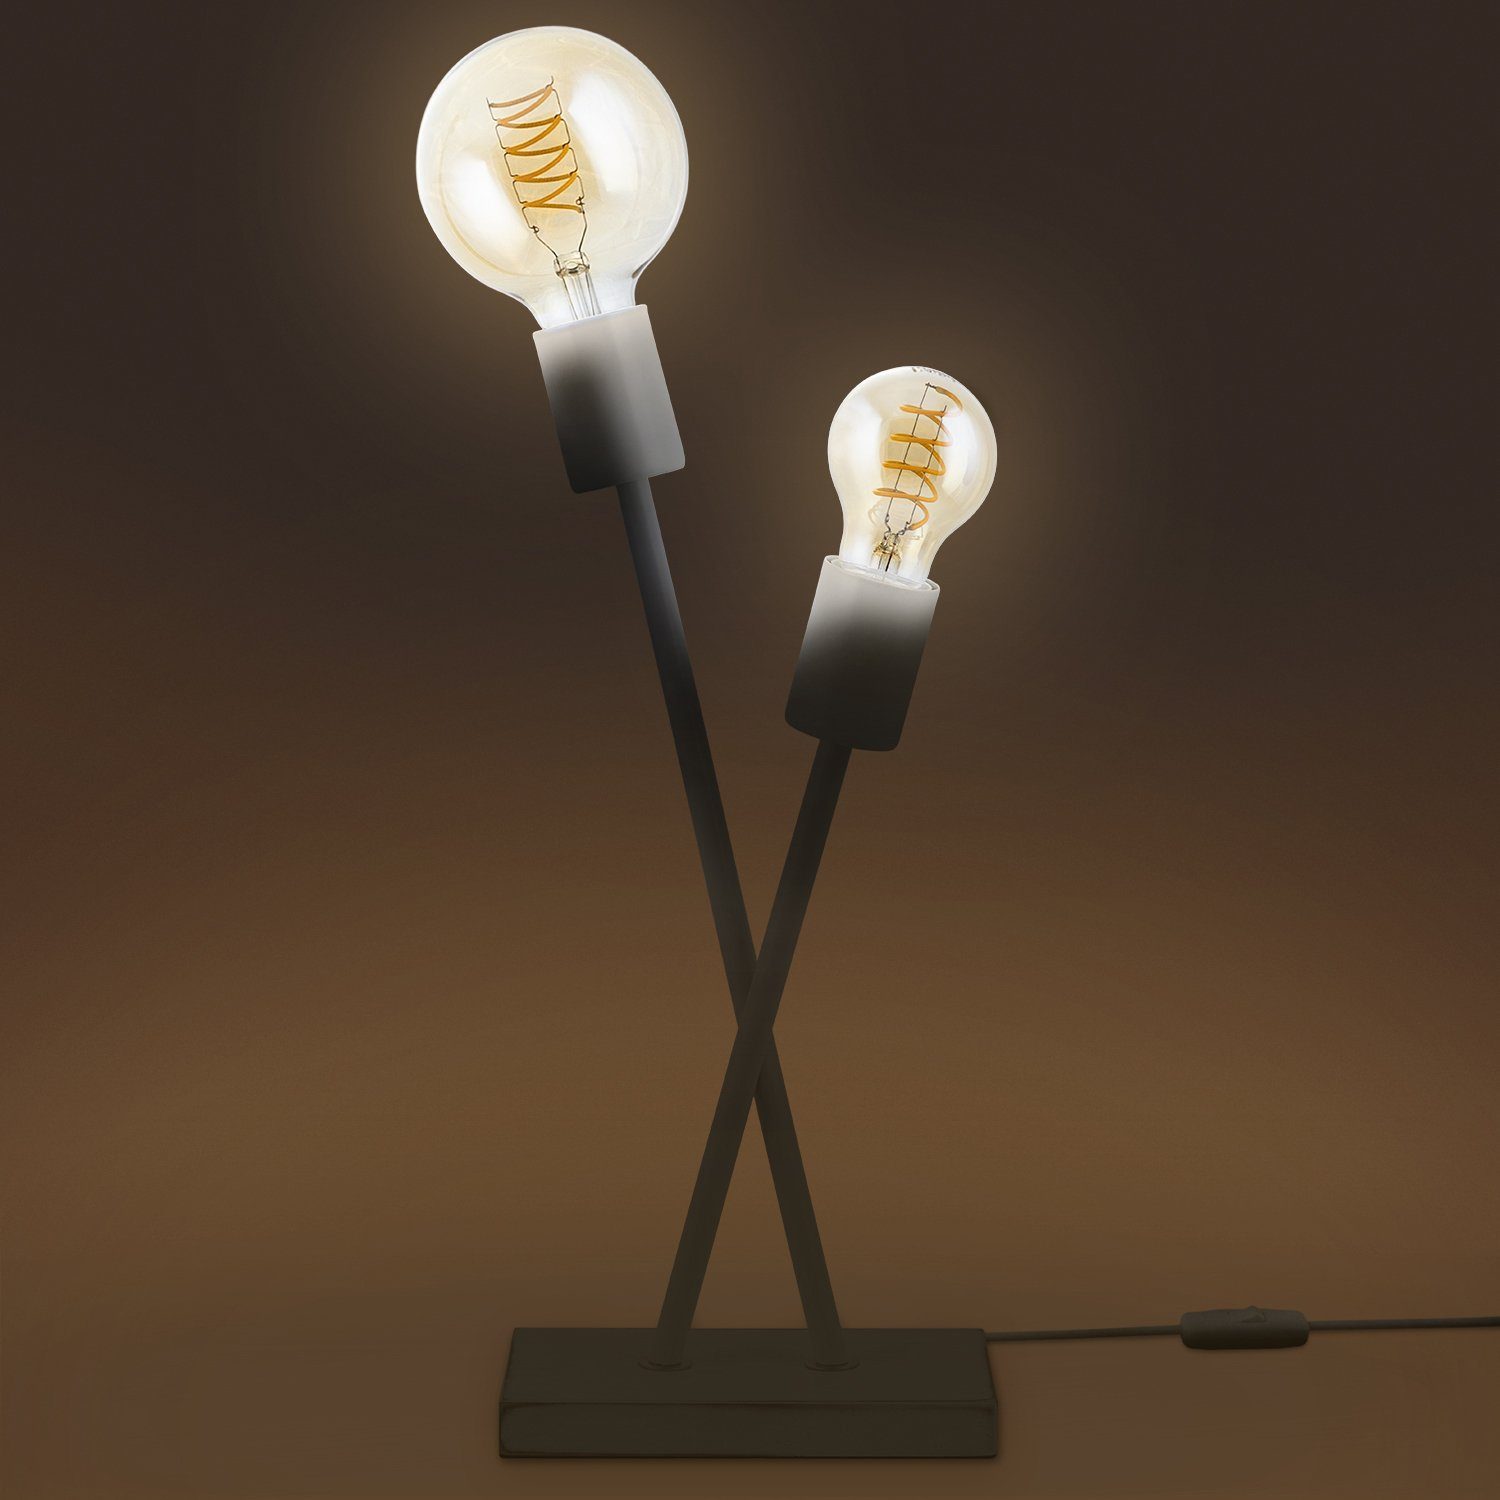 Paco Home Tischleuchte Industrial Leuchtmittel, LED Lampe Wohnzimmer Design Stehlampe E27 Retro ohne IKS, Vintage